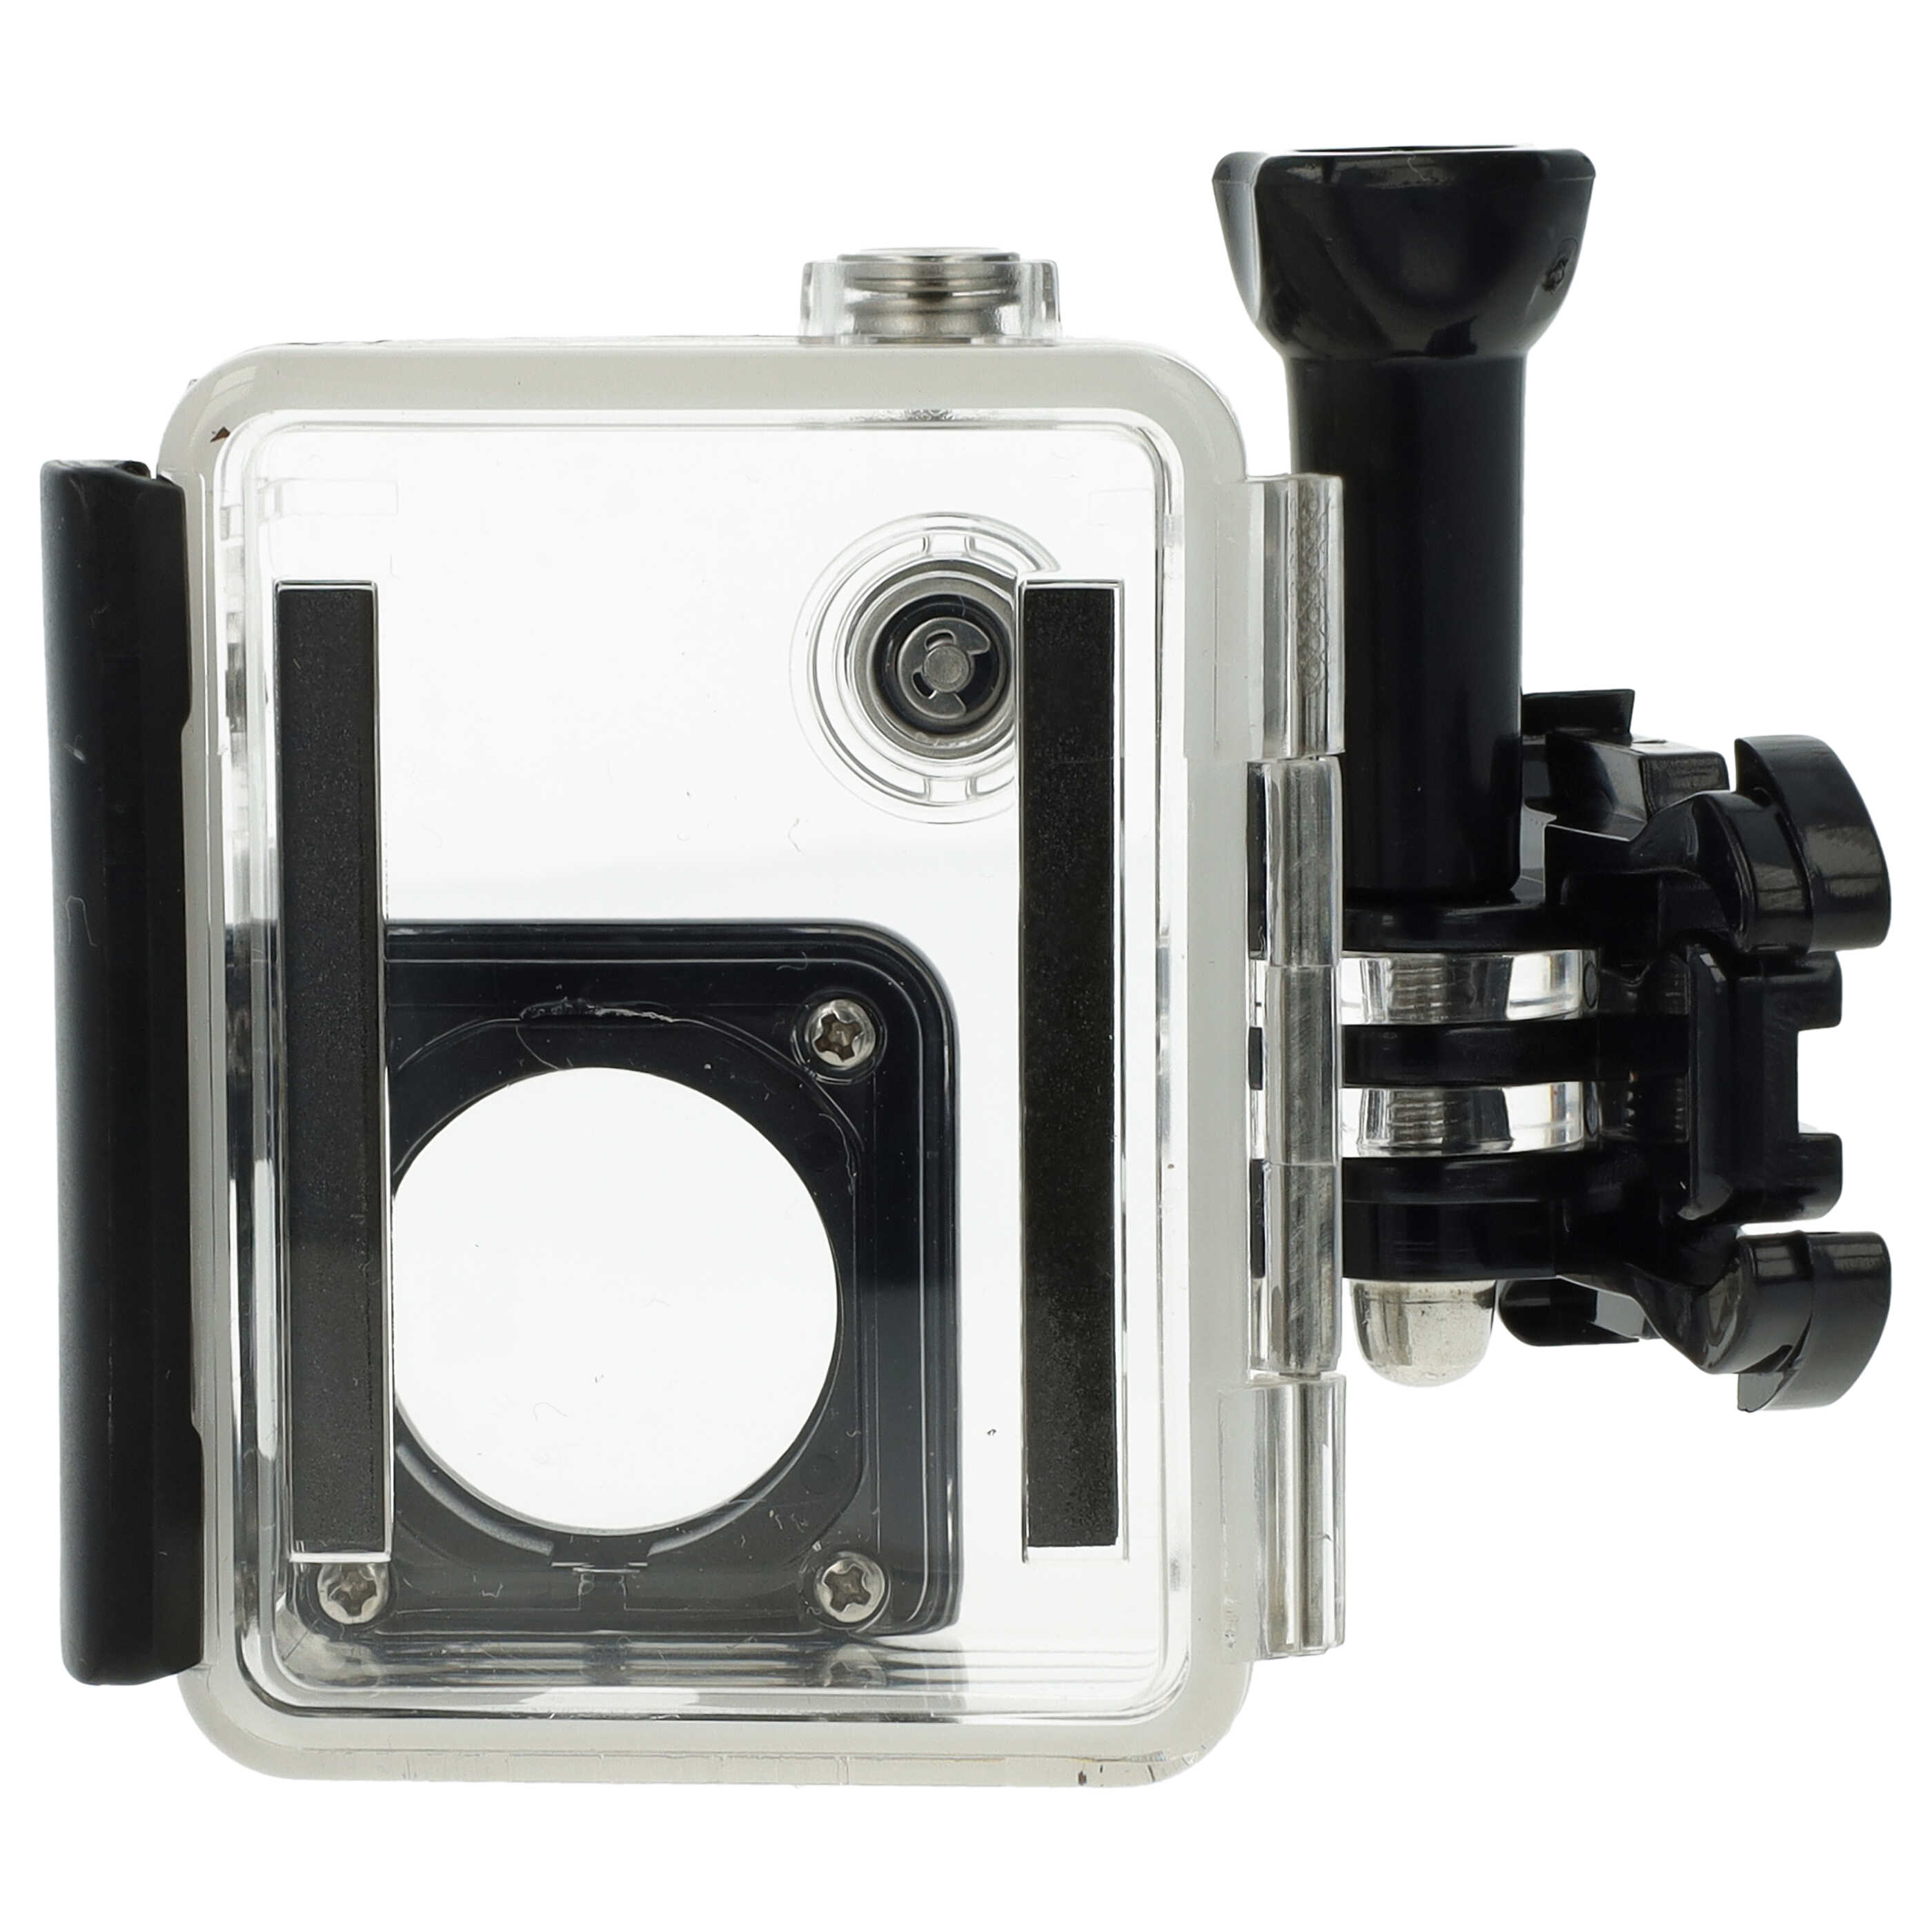 Carcasa sumergible para cámaras acción GoPro Hero 3, 3+, 4 - Profundidad máx. 45 m